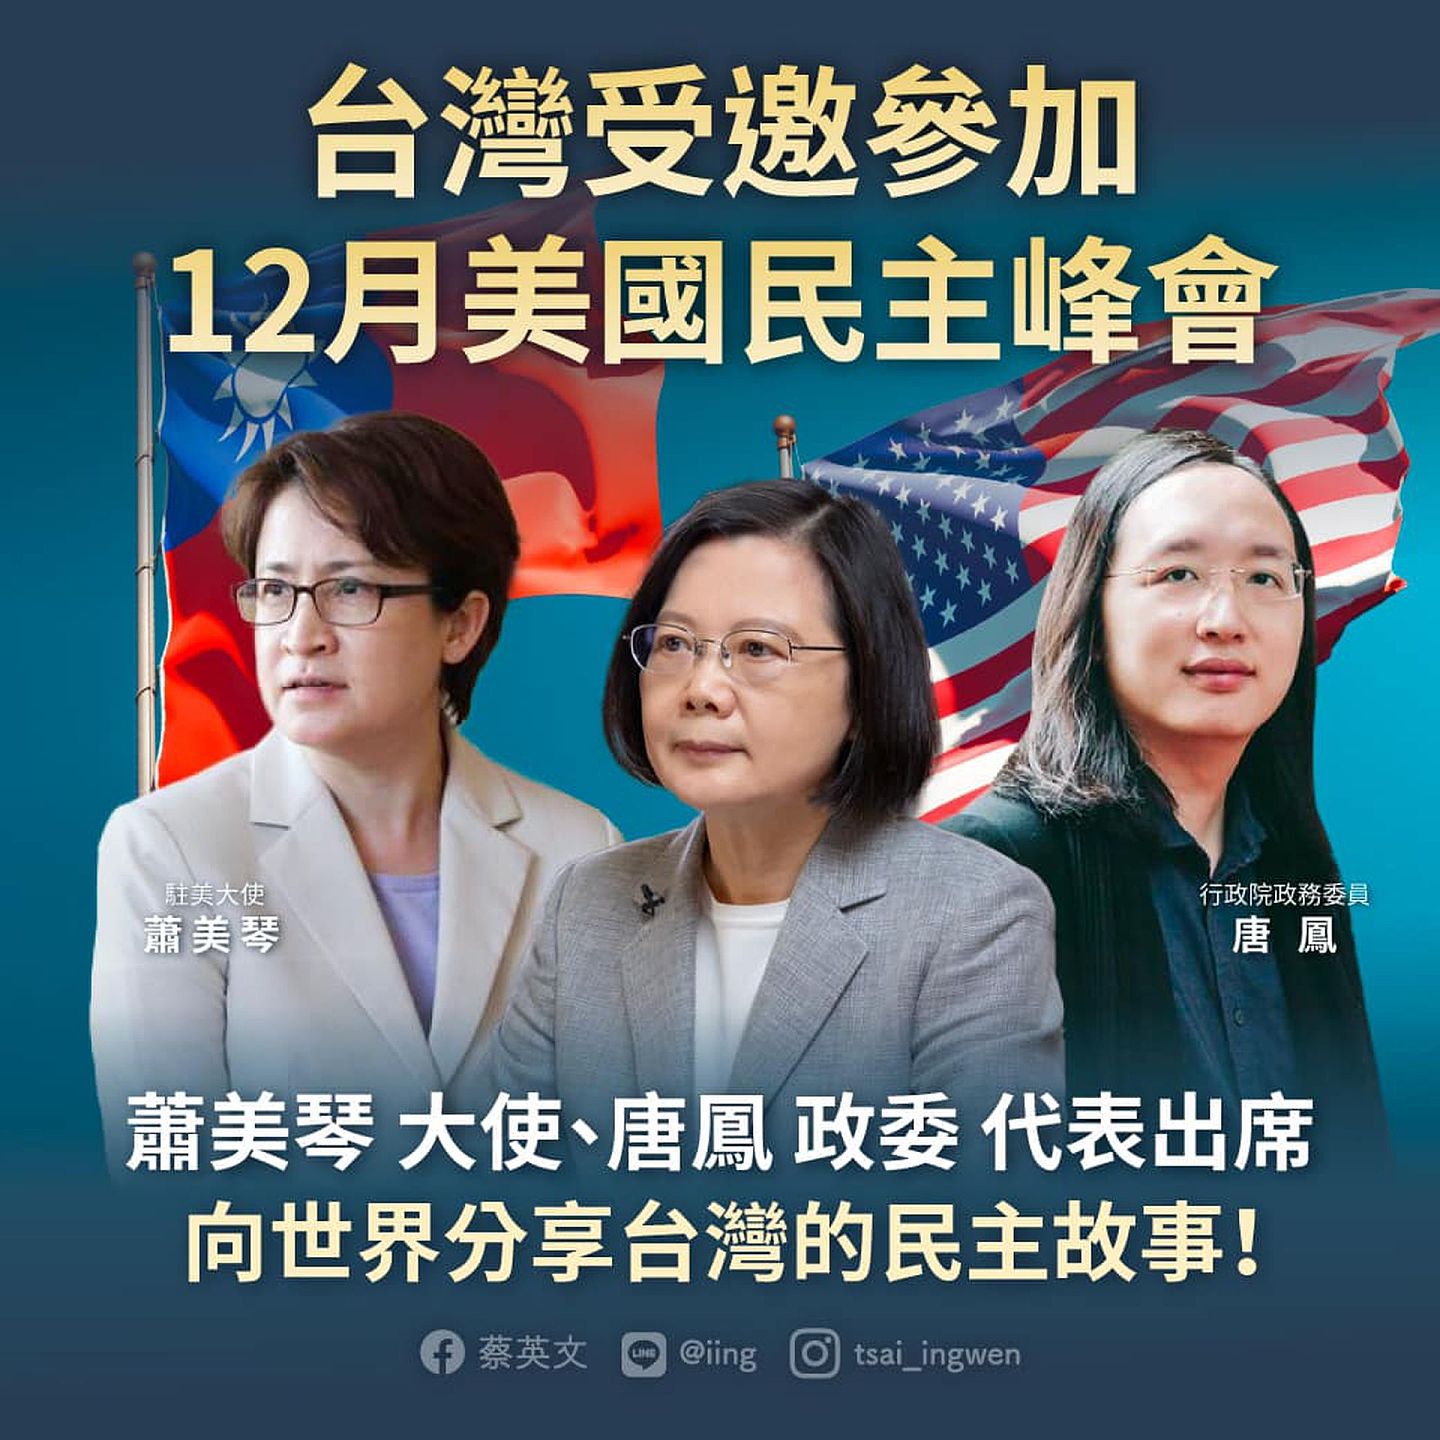 蔡英文在社交媒体称宣示“向世界分享台湾的民主故事”。（Facebook@蔡英文 Tsai Ing-wen）